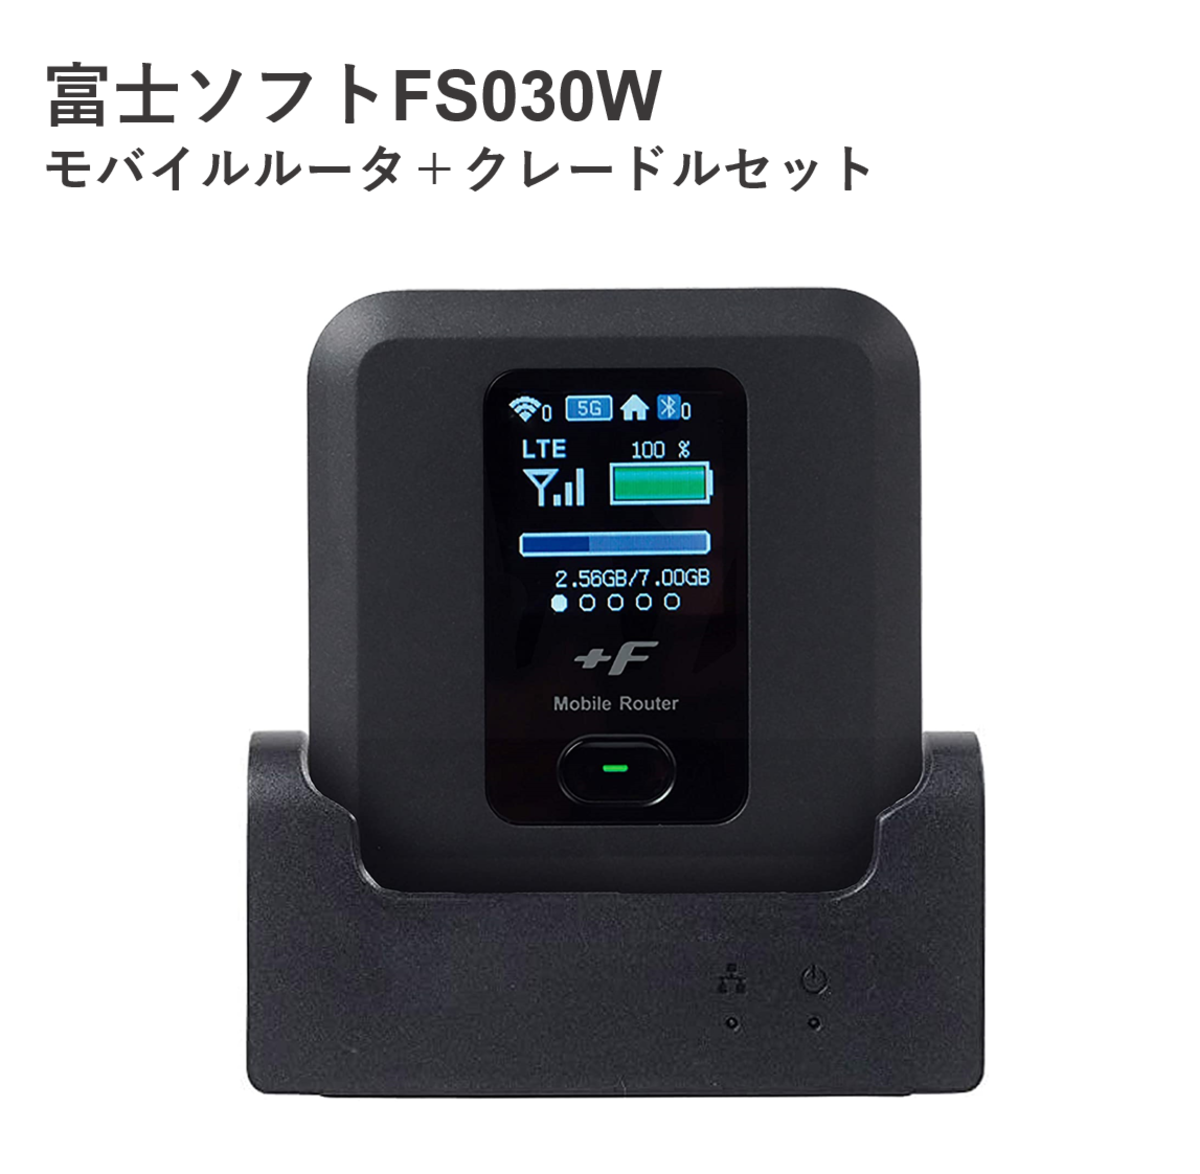 FUJISOFT  FS030W＋専用クレードル SIMフリー